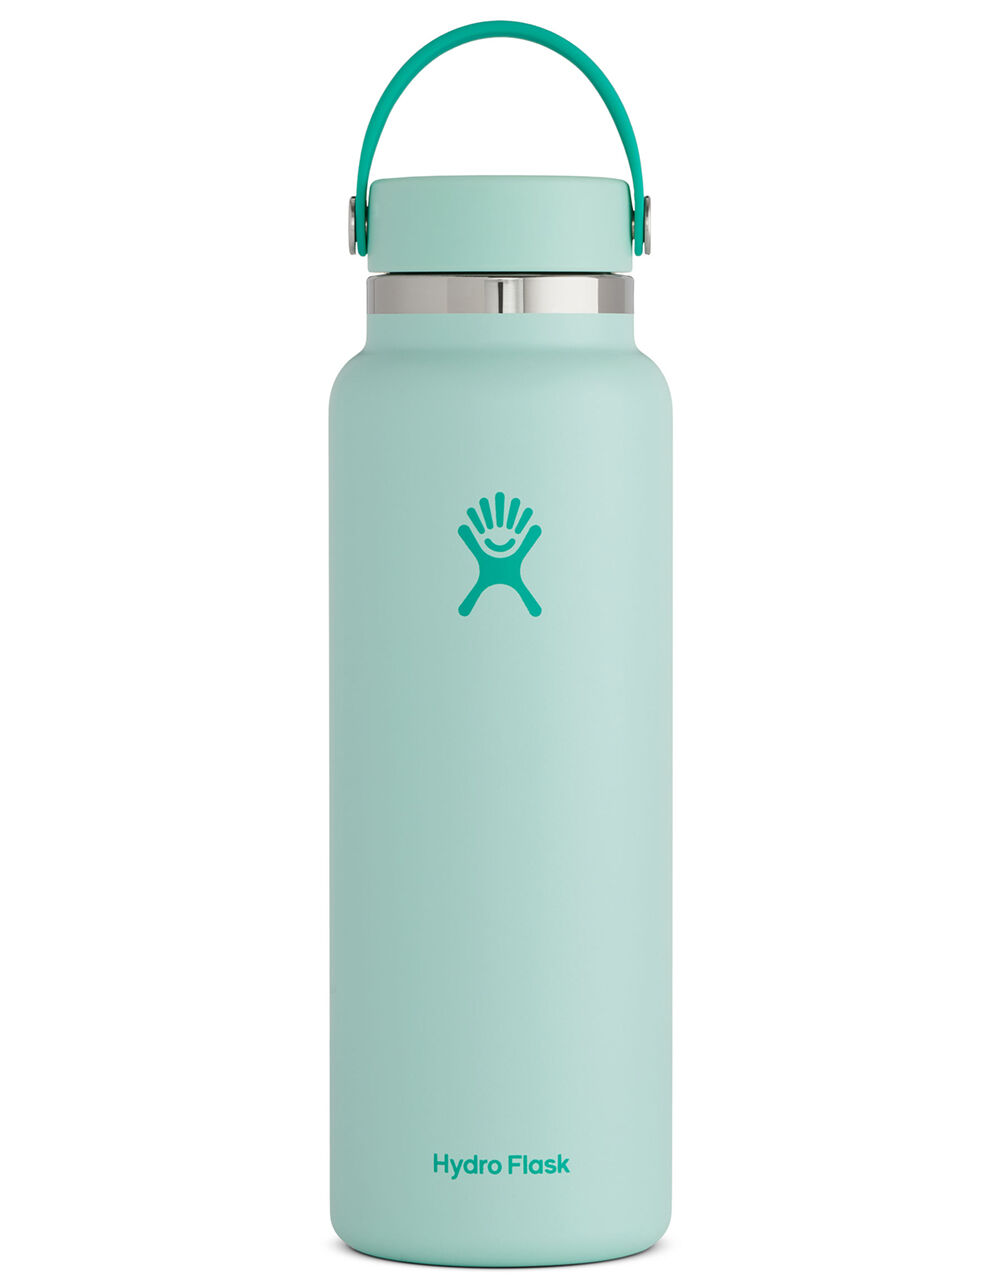 Hydro Flask Water Bottle 40 Oz - Arborwear